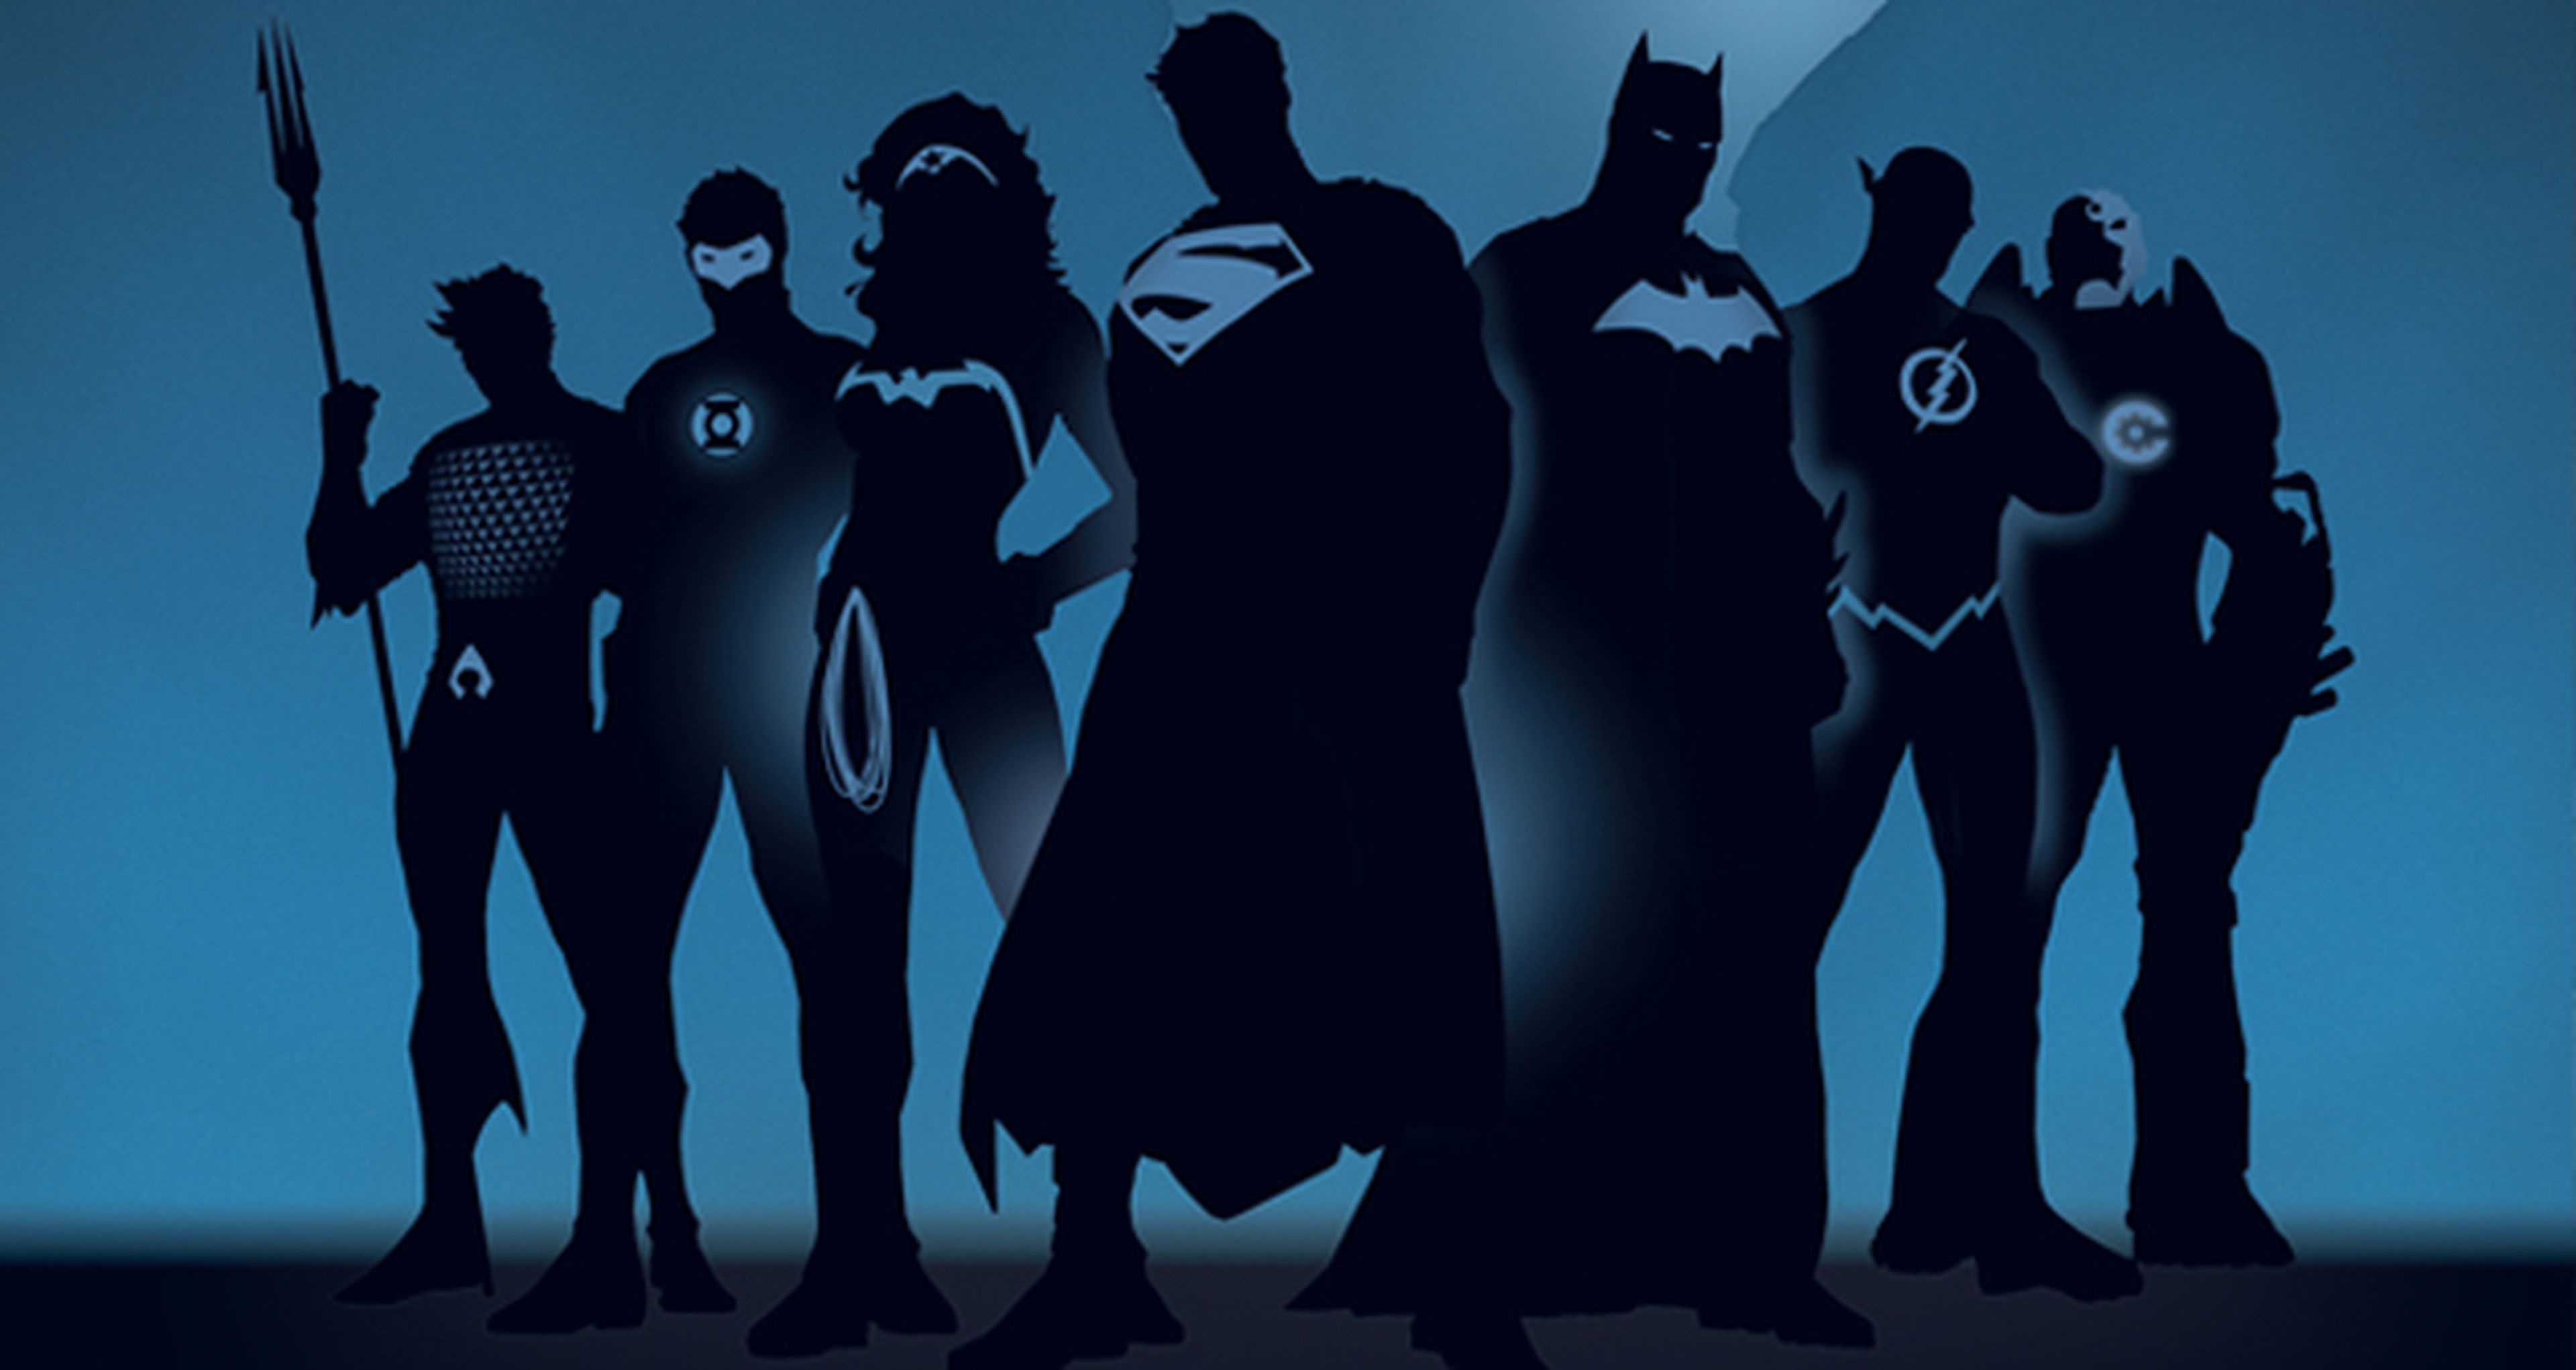 Zack Snyder dirigirá La Liga de la Justicia tras Batman vs. Superman